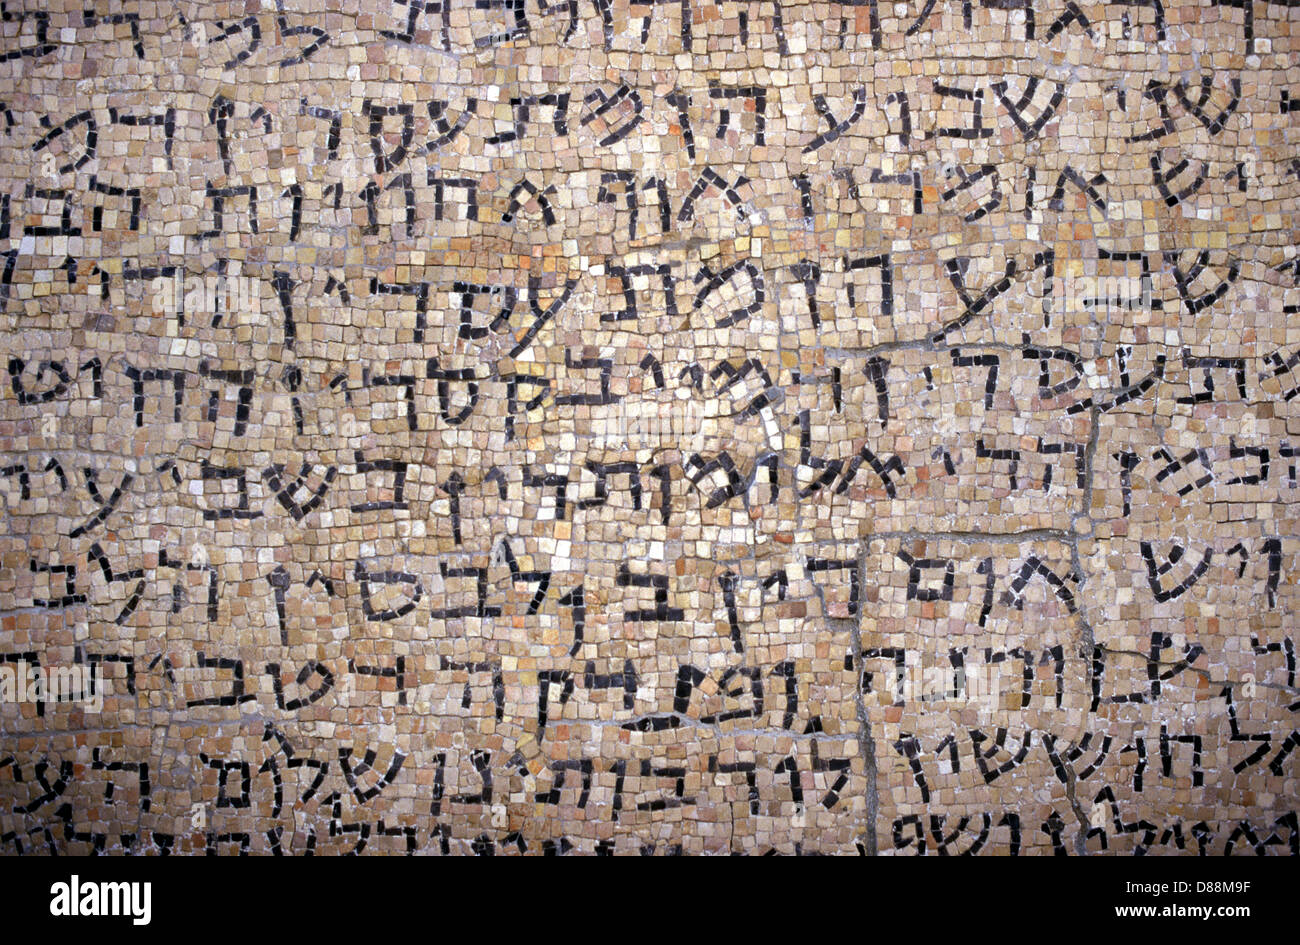 Mosaïque avec inscription en hébreu affichée à la cour du Musée d'Israël à Jérusalem Israël Banque D'Images